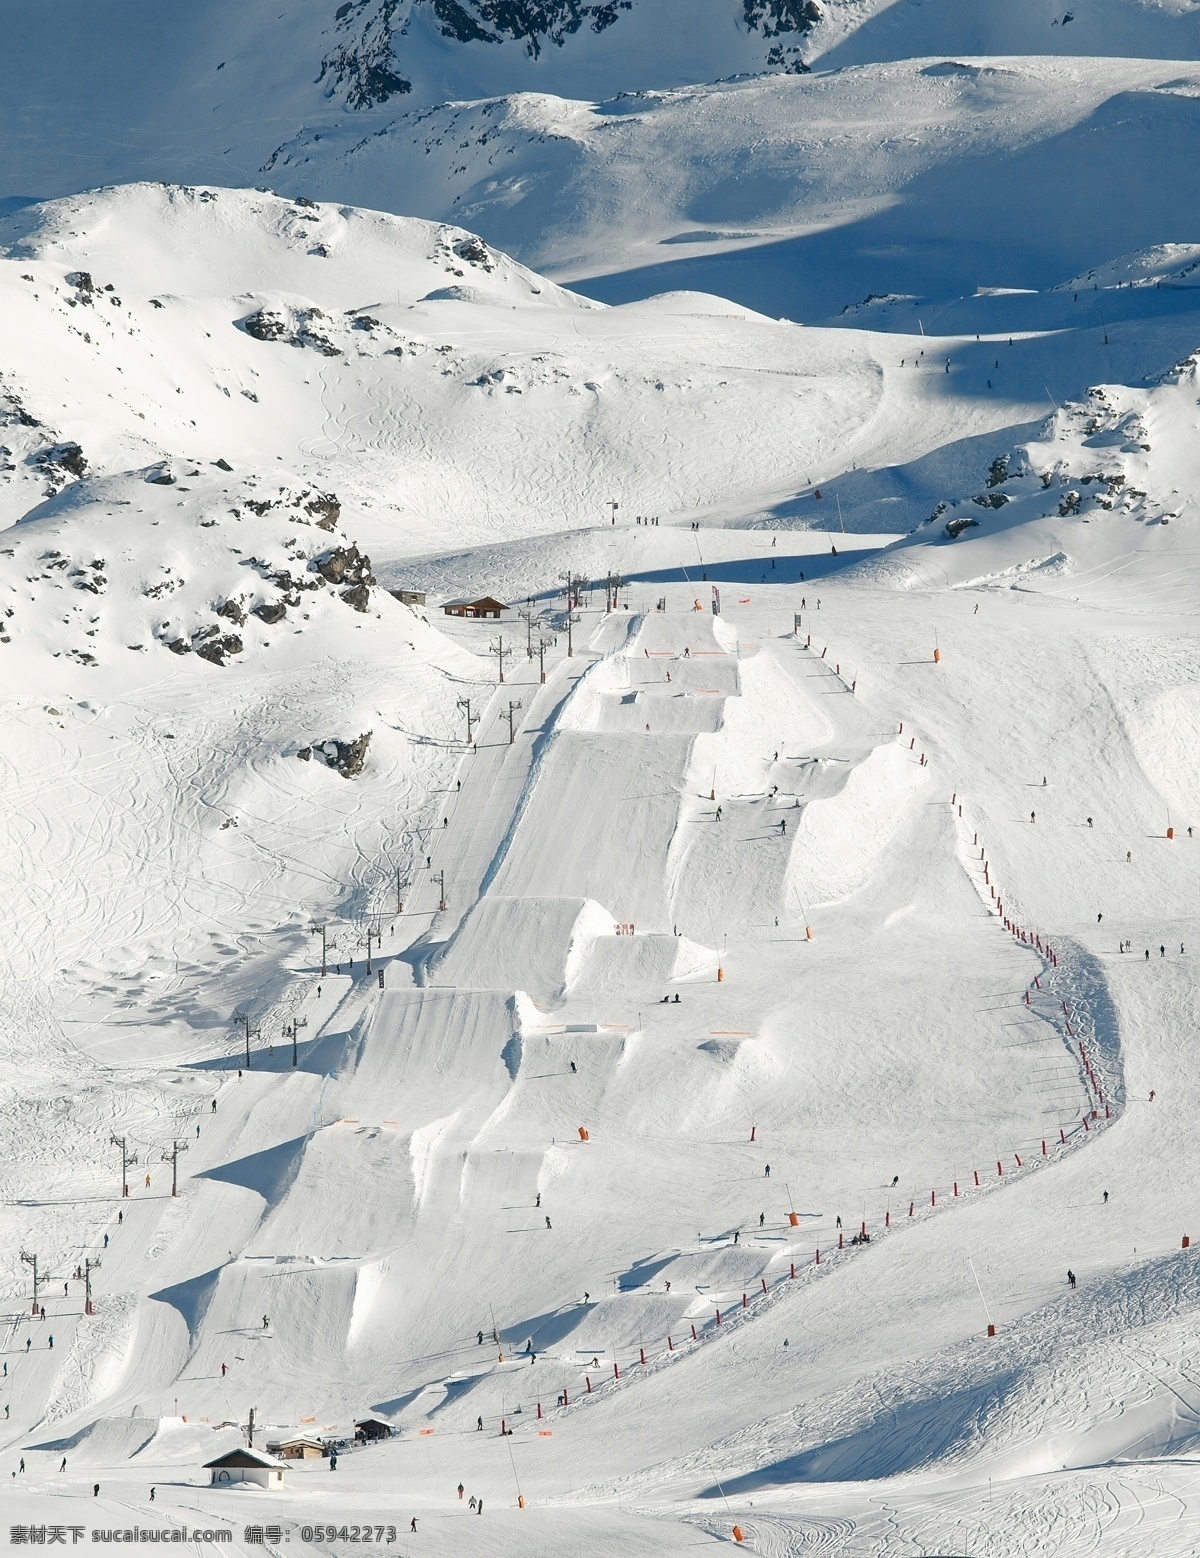 滑雪场 风景 滑雪场风景 滑雪公园风景 雪地风景 美丽雪景 雪山风景 滑雪图片 生活百科